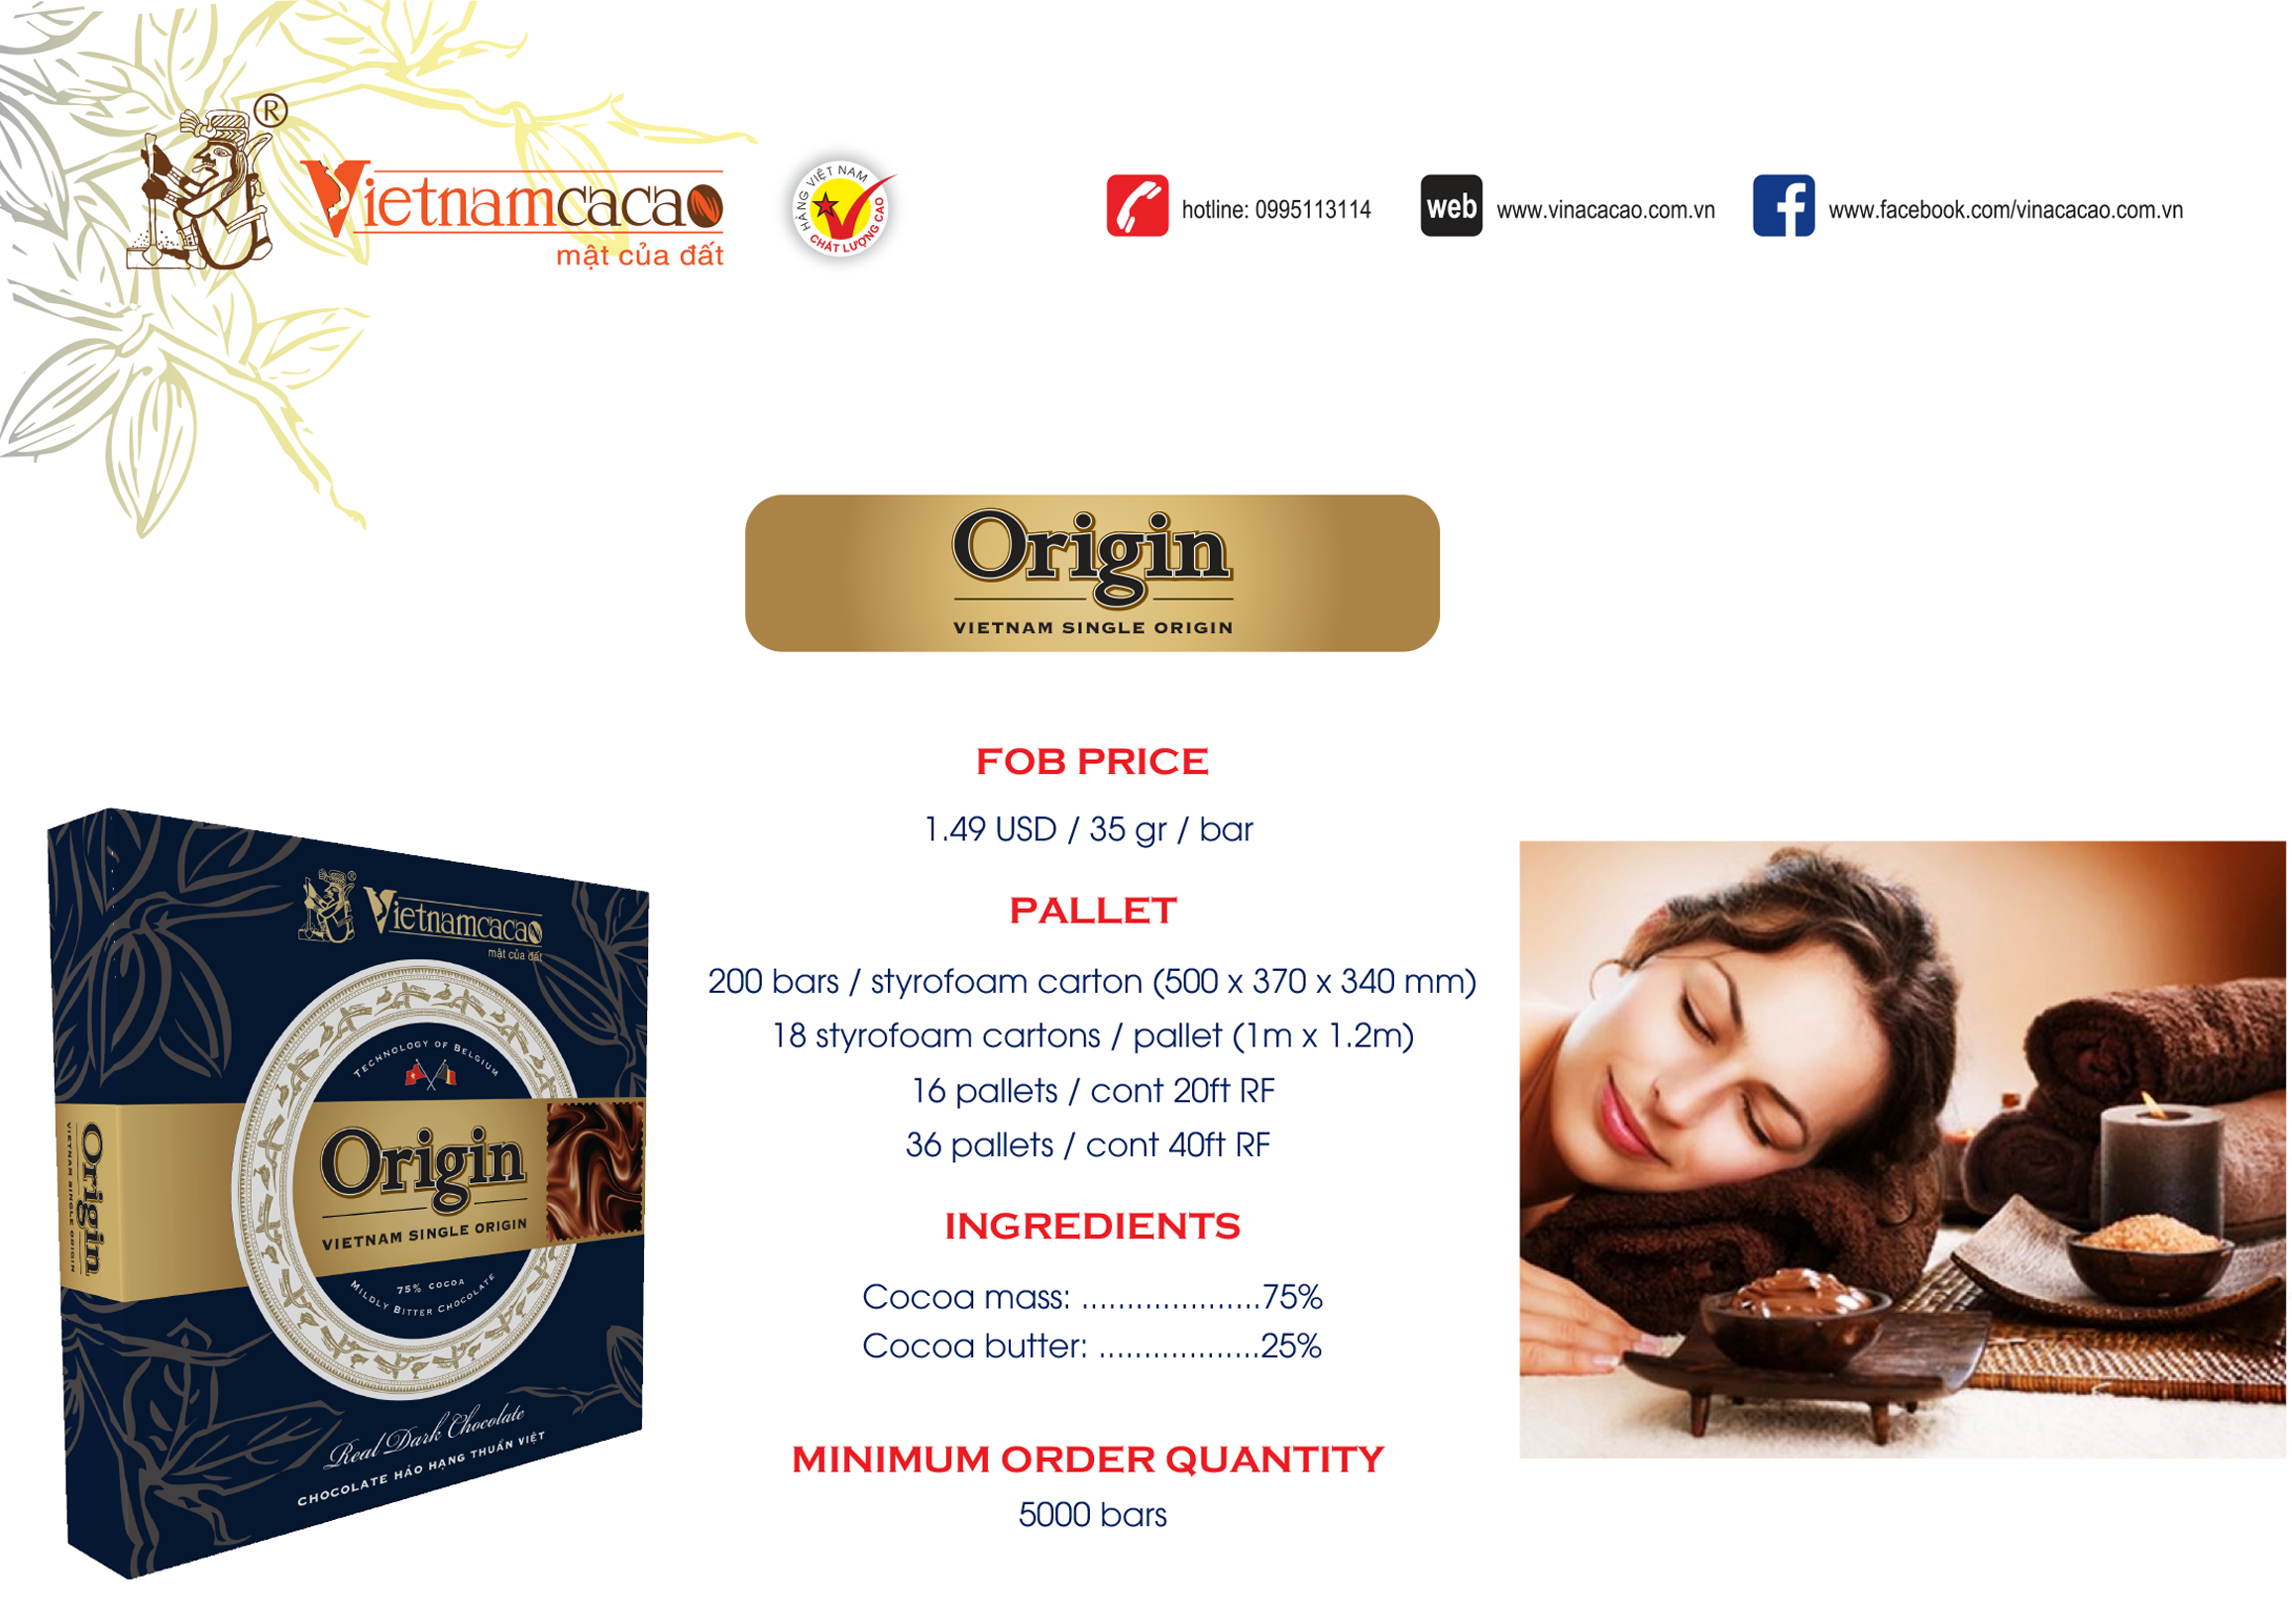 Origin chocolate